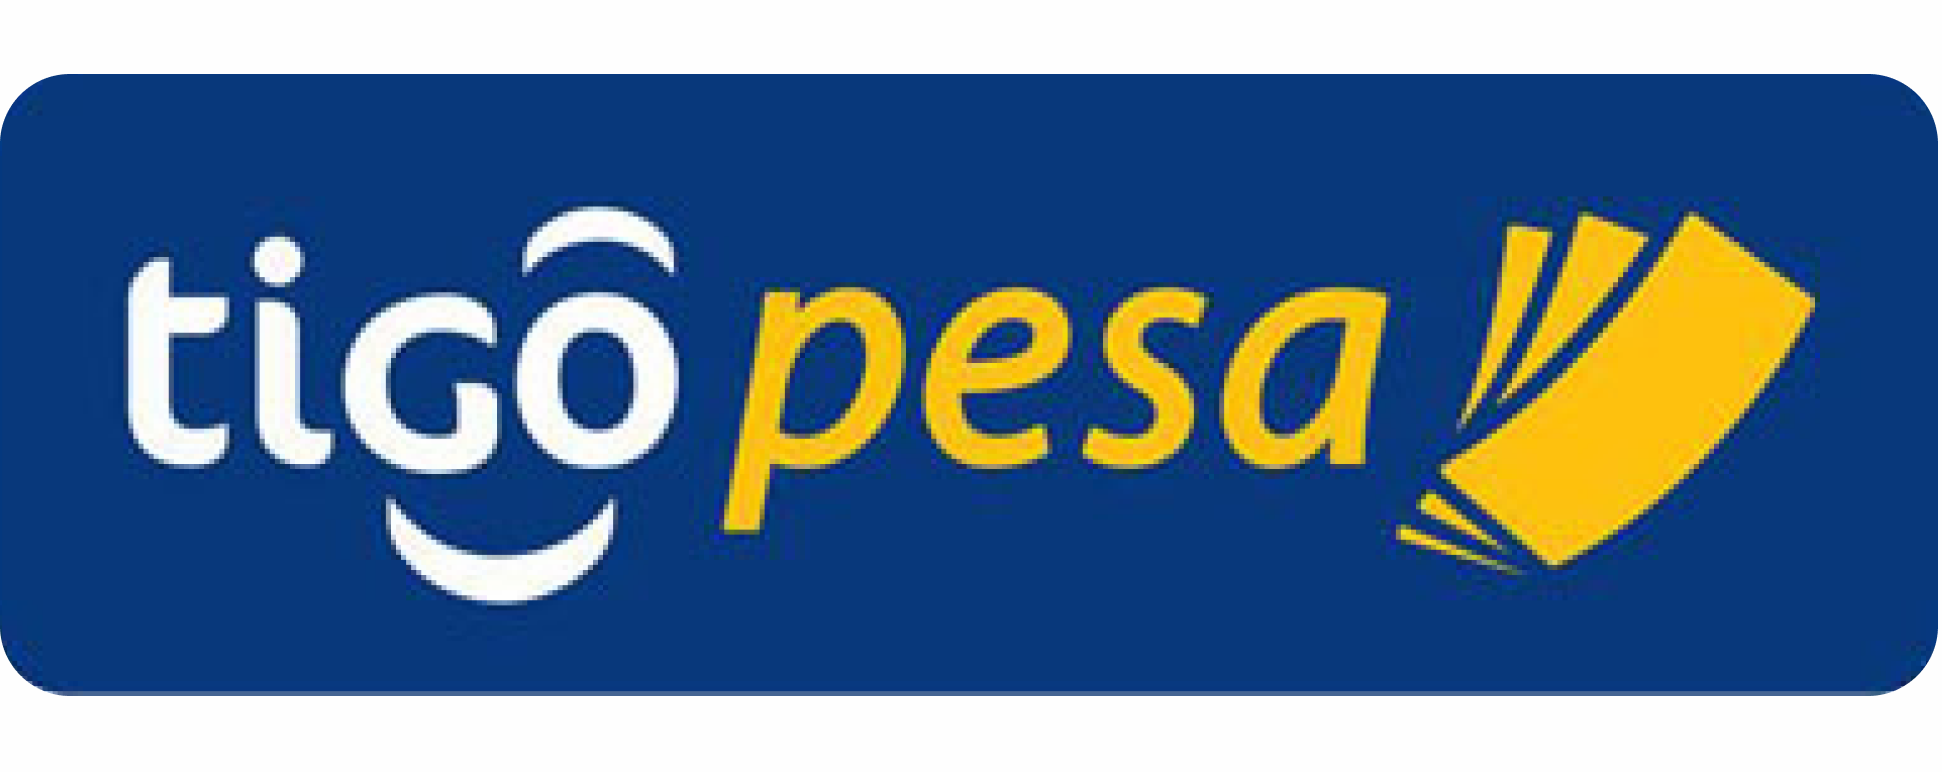 logo for Tigo Pesa